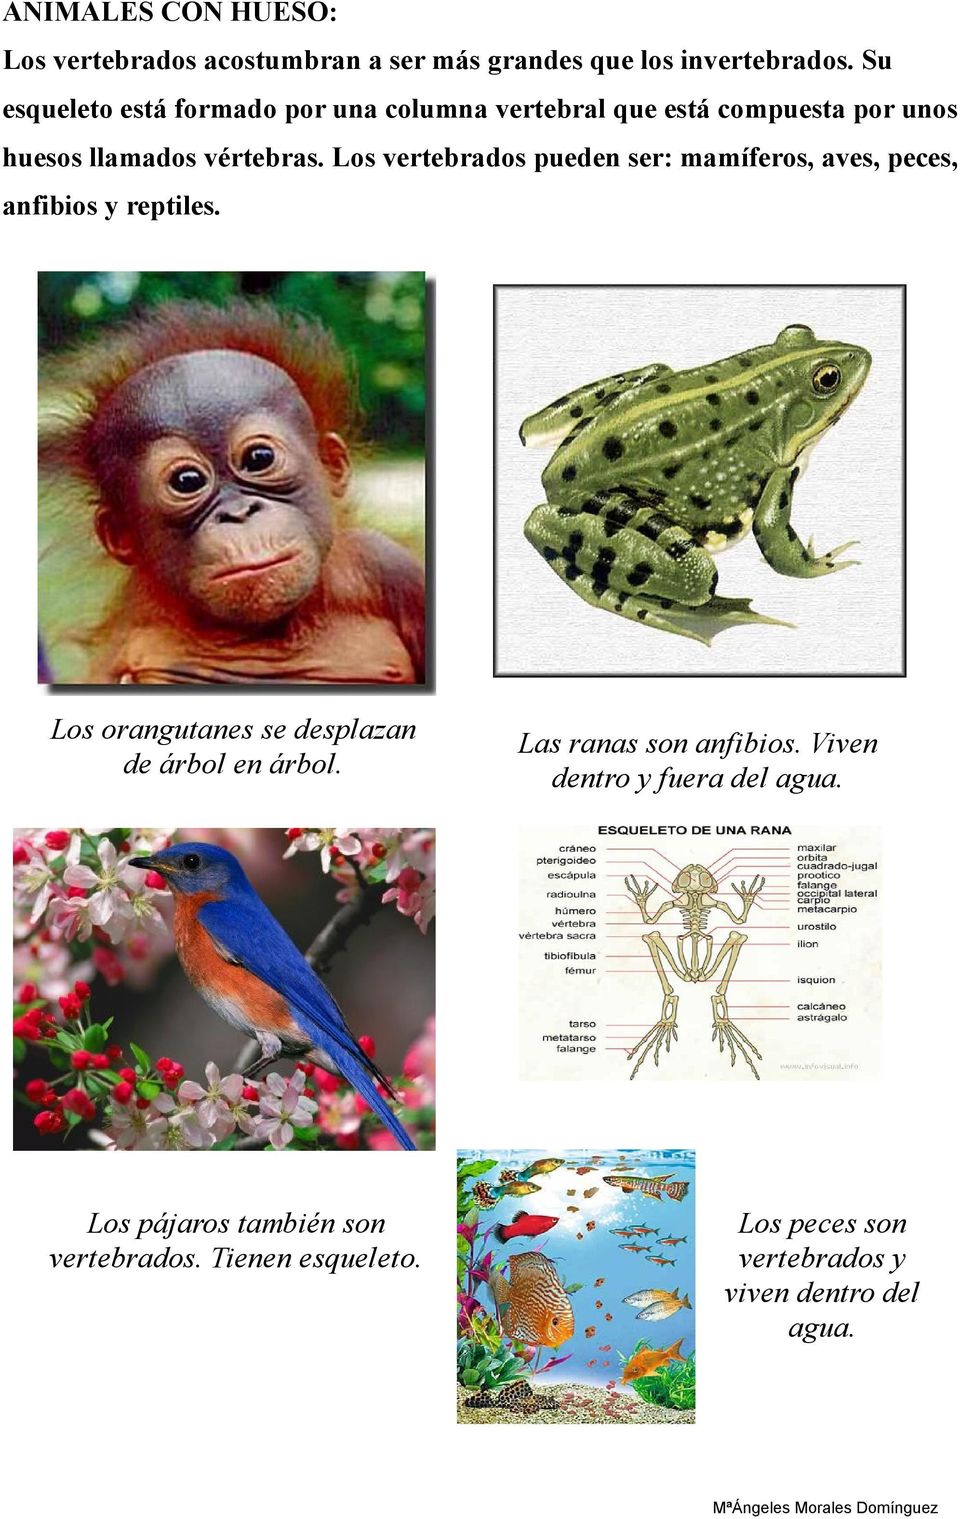 Los vertebrados pueden ser: mamíferos, aves, peces, anfibios y reptiles. Los orangutanes se desplazan de árbol en árbol.